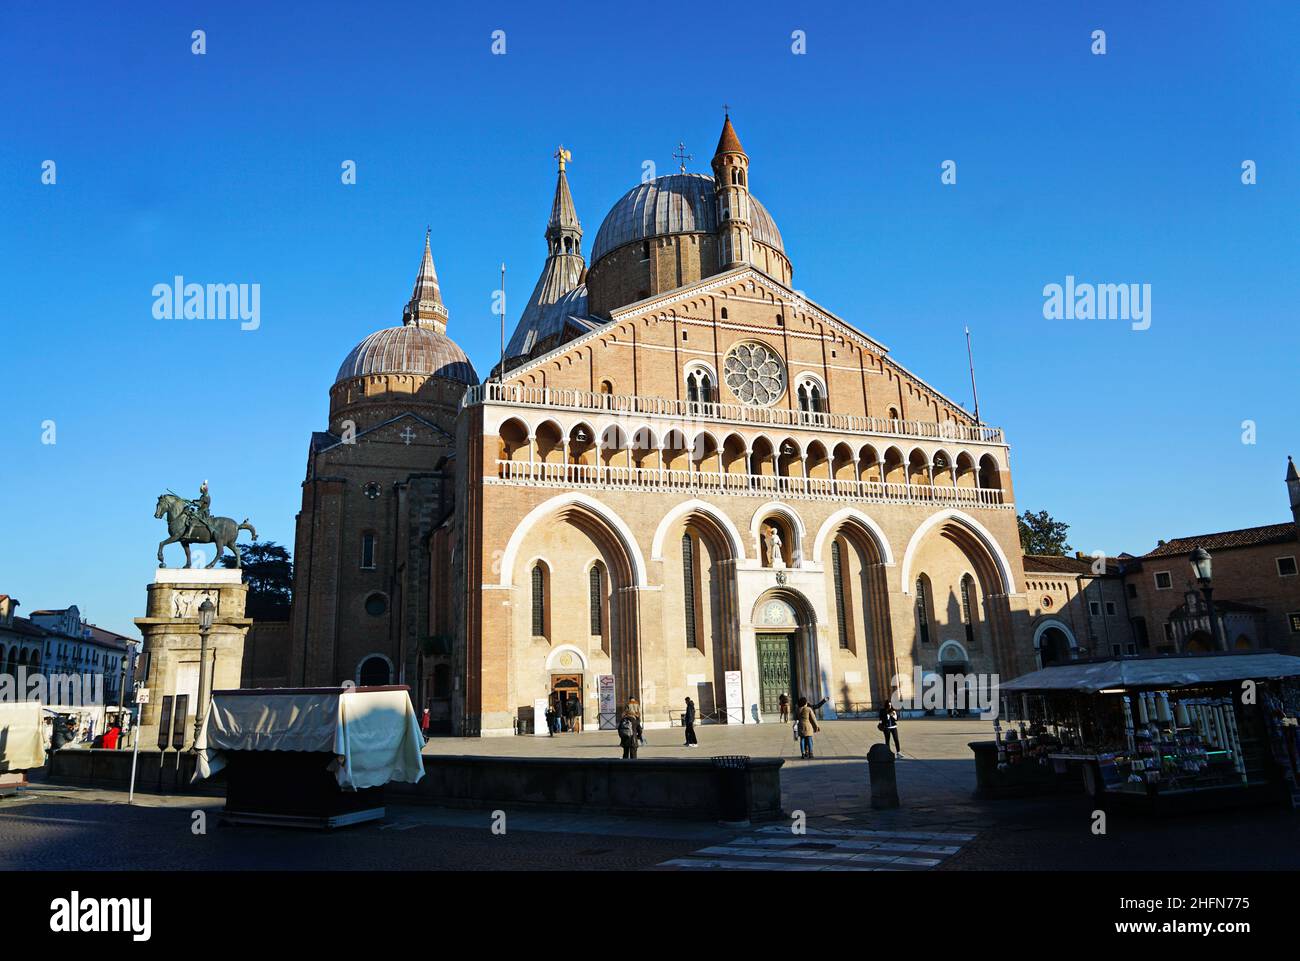 Basilique pontificale de Saint Antoine de Padoue (Basilique de sant'antonio di padova) Padoue, Italie - janvier 2022 Banque D'Images